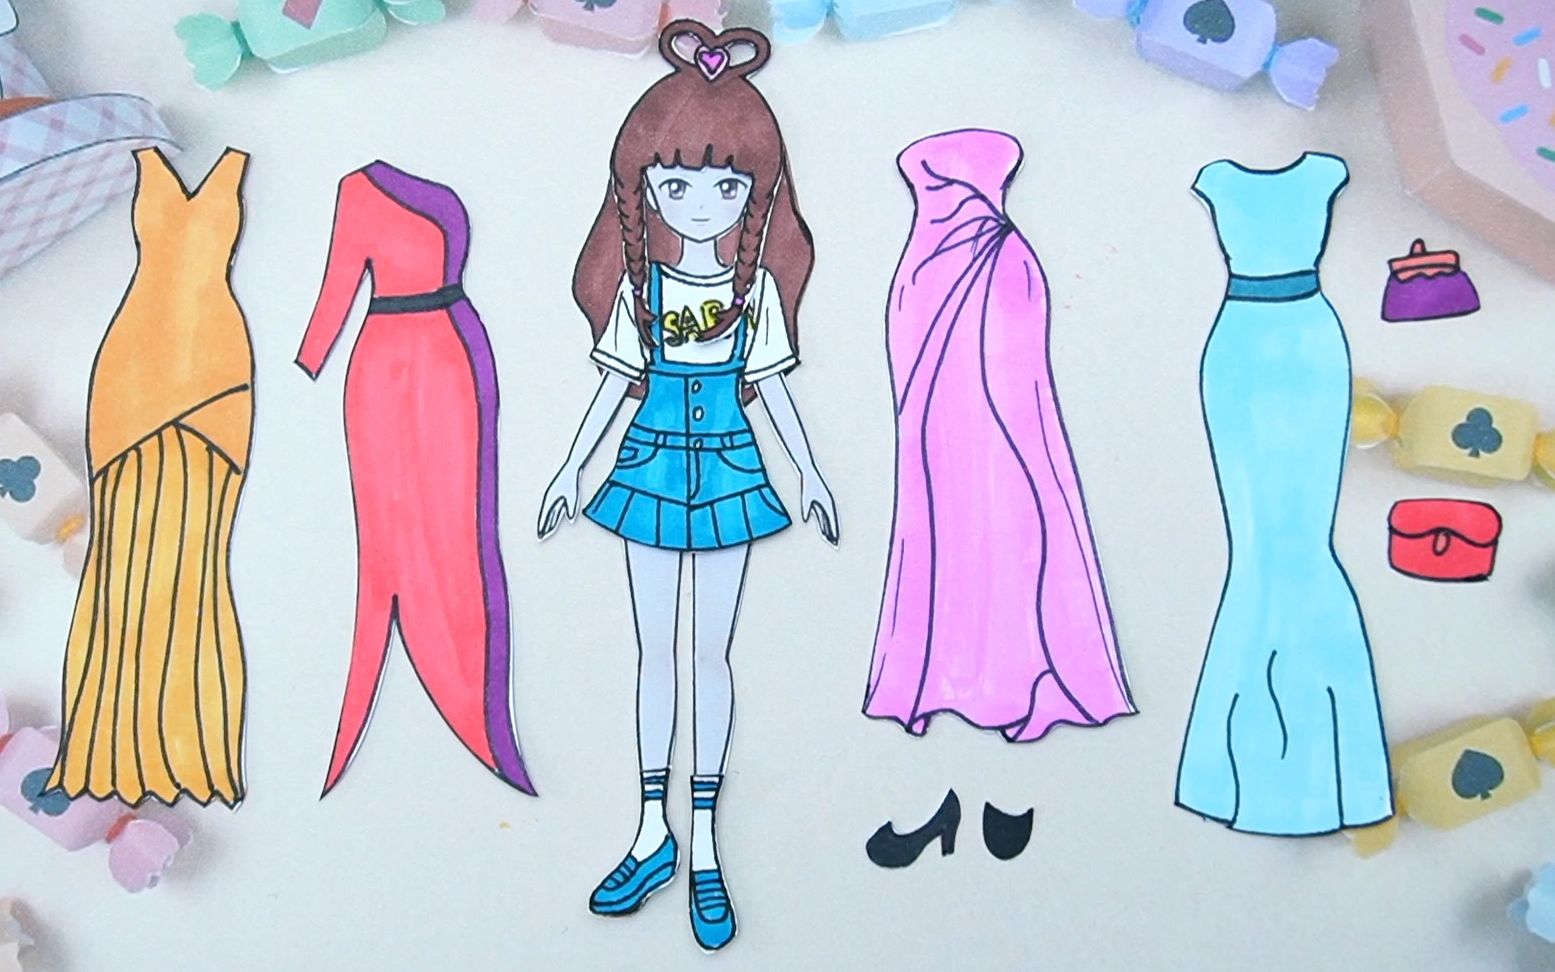 画纸娃娃的衣服和裙子图片